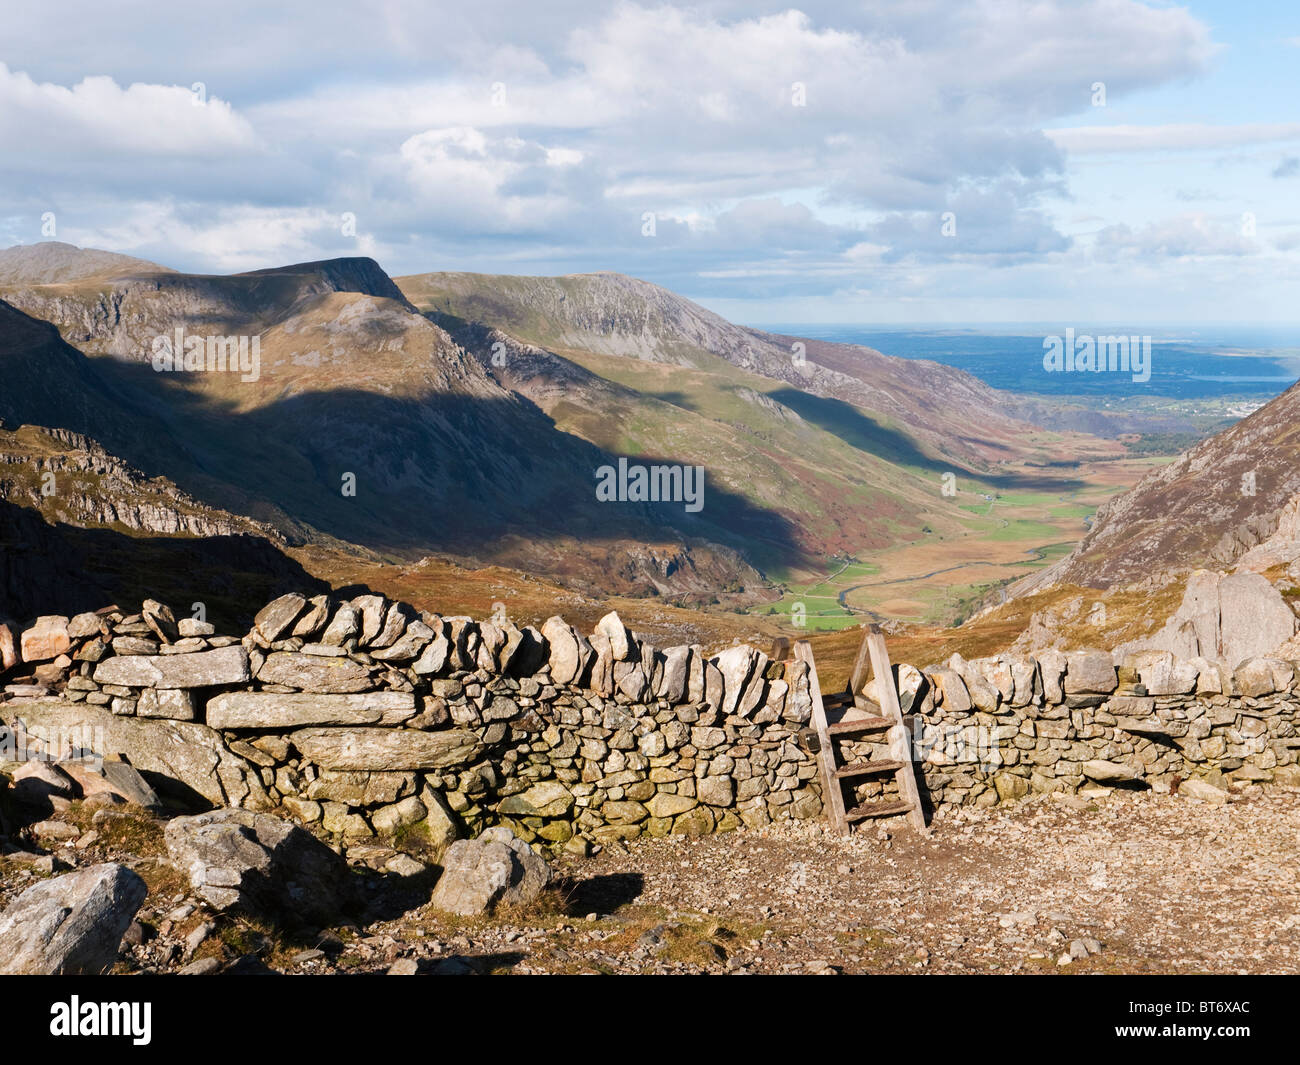 Visualizza in basso Nant Ffrancon da Bwlch Tryfan in Snowdonia. Foel Goch & Carnedd y Filiast in vista sulla sinistra della valle Foto Stock